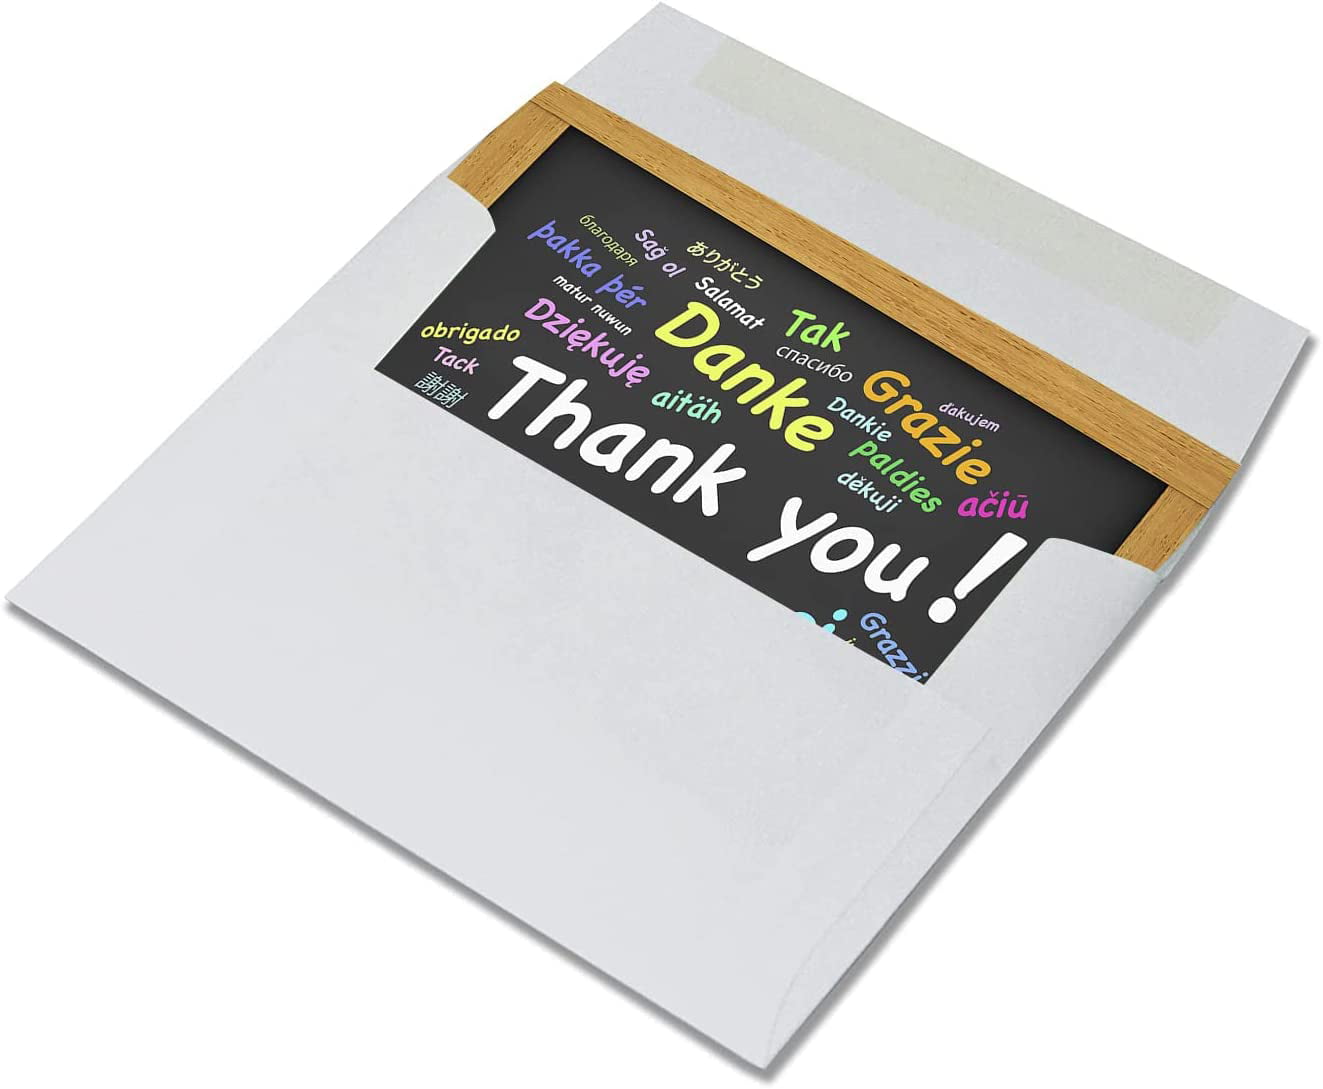  Small World Greetings Oops! 謝罪 申し訳ありませんカード 12枚 - 内側は空白 白い封筒 -  A2サイズ 5.5インチ x 4.25インチ - 友人、家族、顧客など : Office Products